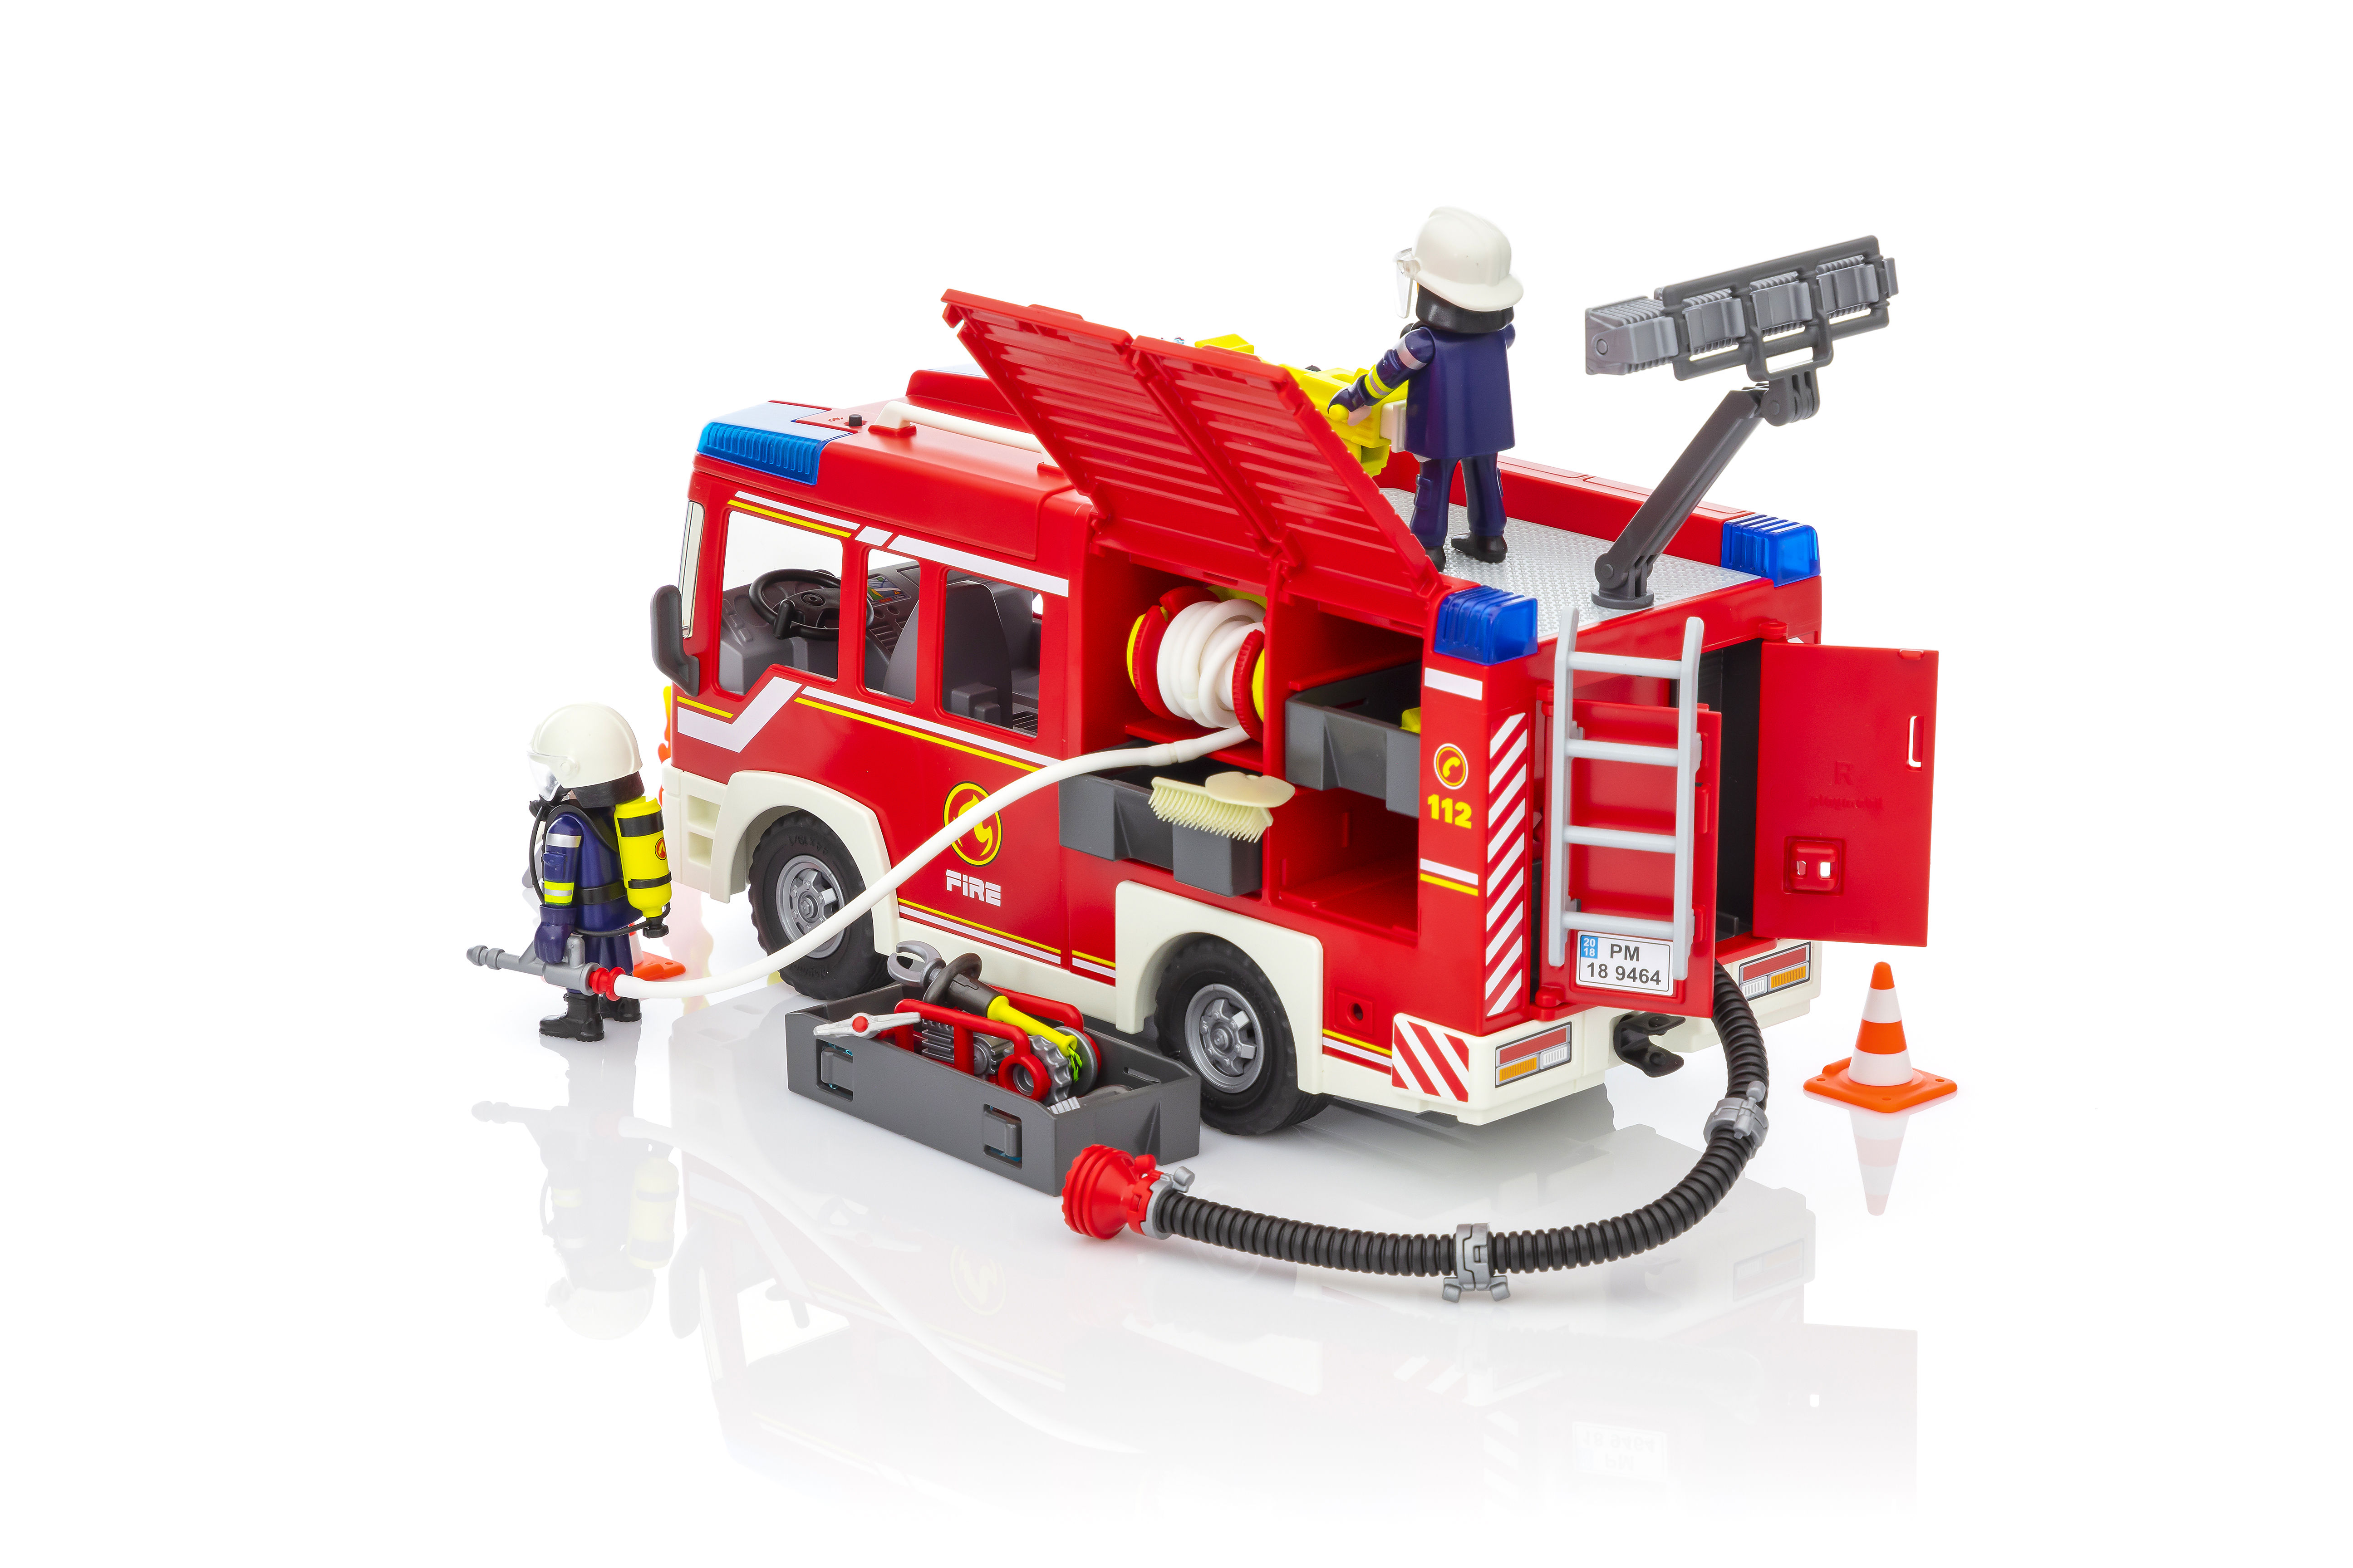 Playmobil - 9464 - Les pompiers - Fourgon d'intervention des pompiers